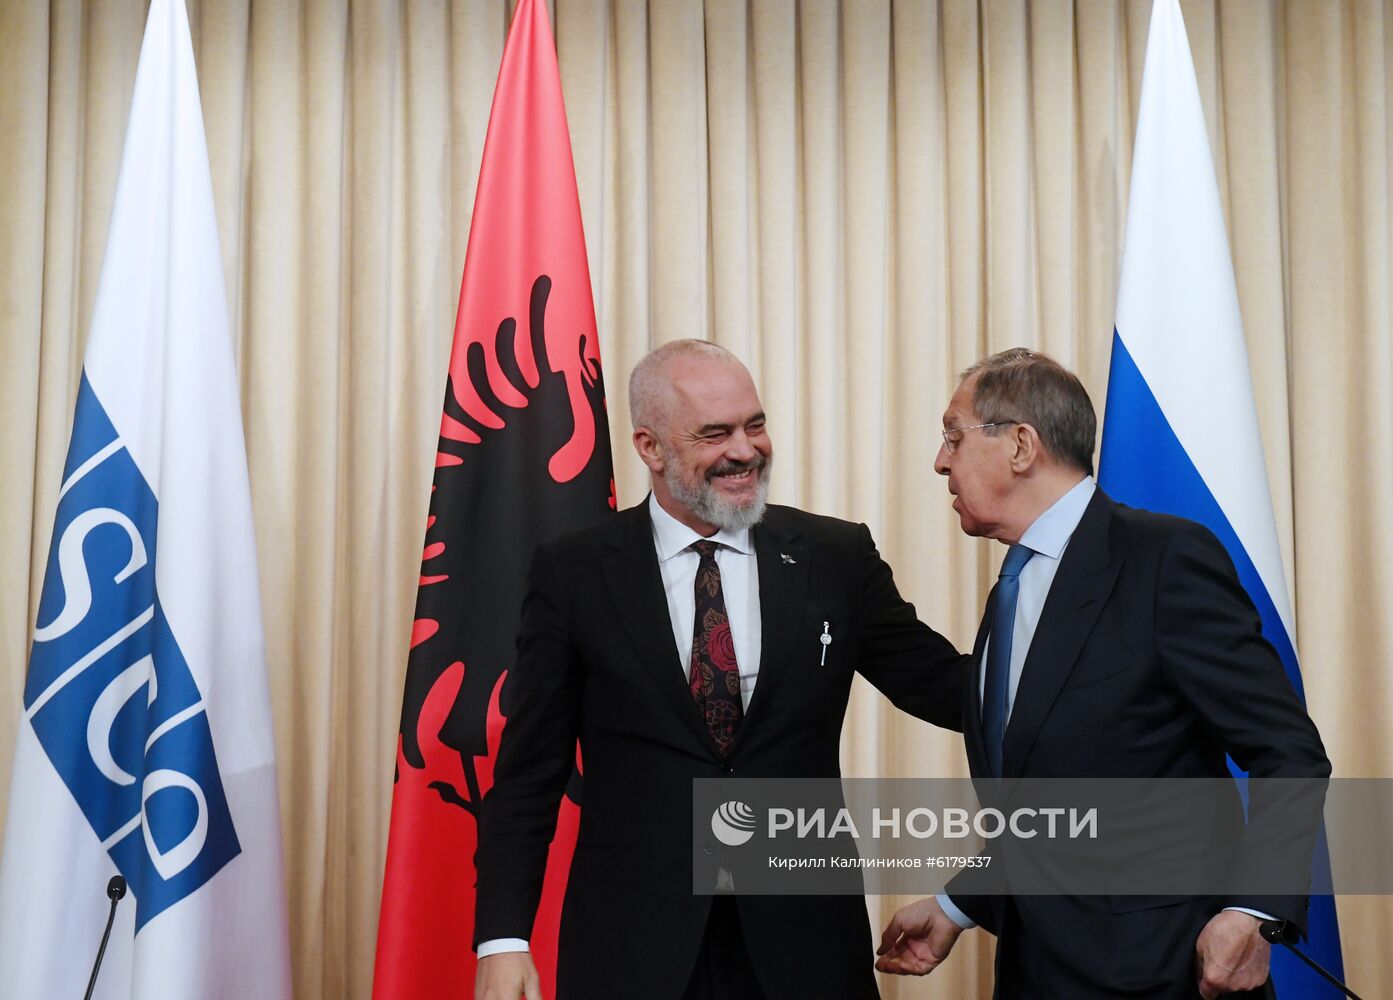 Встреча главы МИД РФ С. Лаврова с премьер-министром Албании Э. Рамой